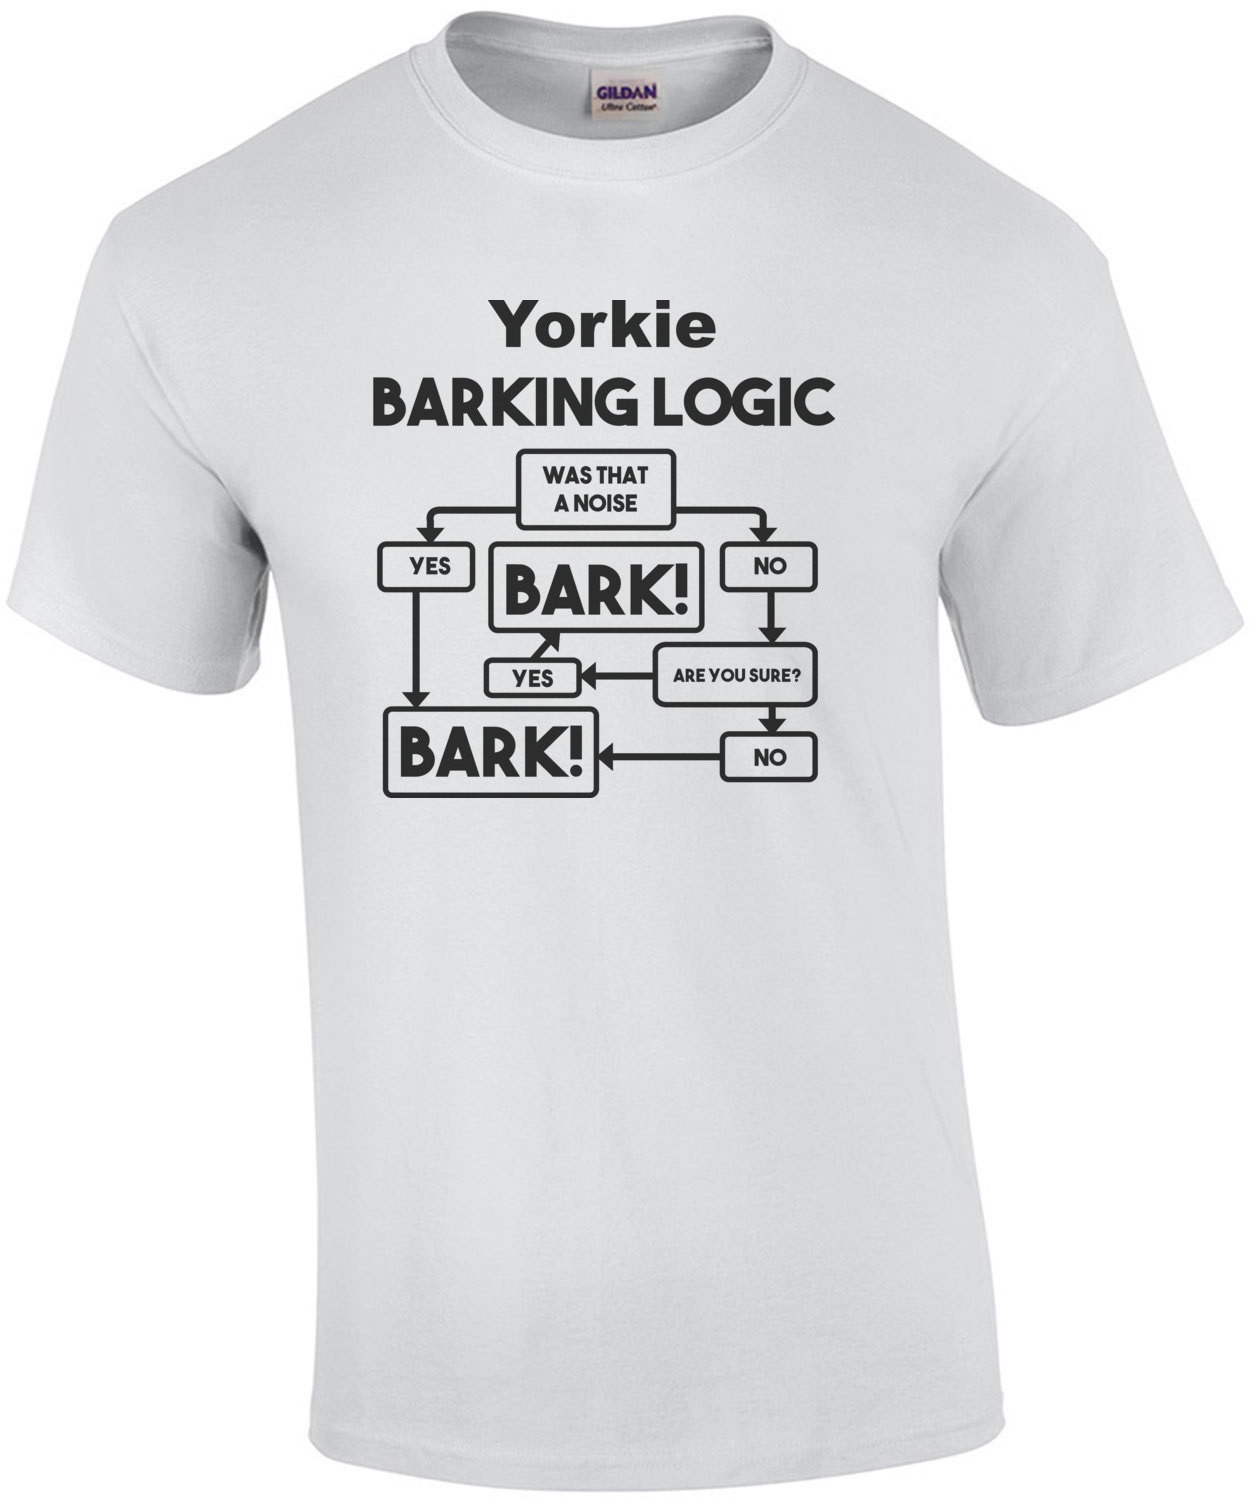 Yorkie Barking Logic - Yorkie / Yorkshire Terrier T-Shirt